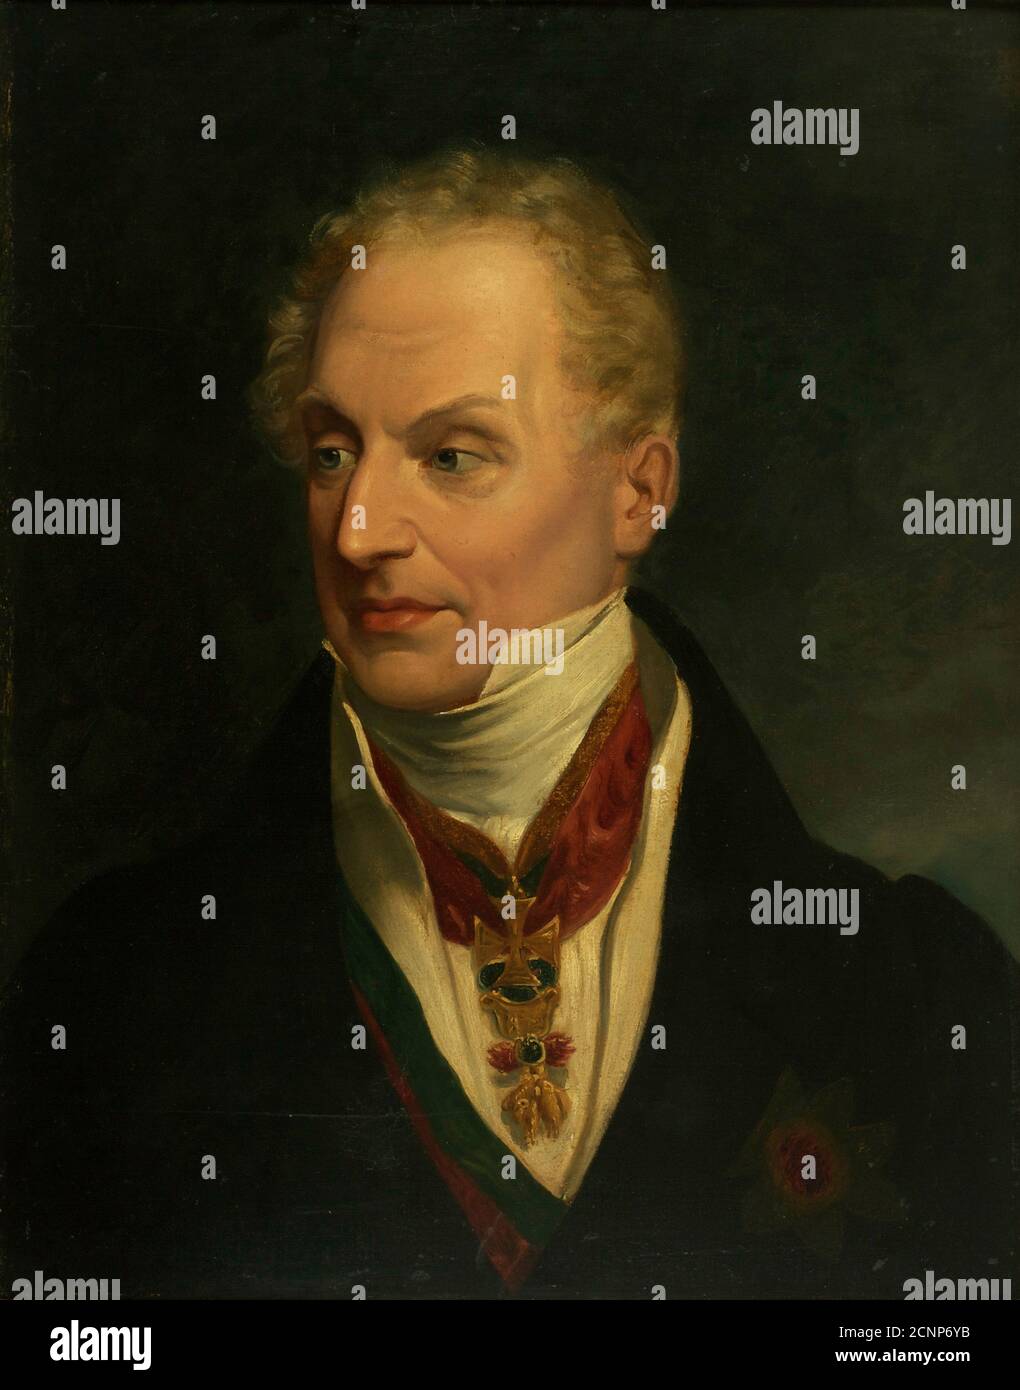 Portrait of Klemens Wenzel, Prince von Metternich (1773-1859), c. 1815. Found in the collection of &#xd6;sterreichische Galerie Belvedere, Vienna. Stock Photo